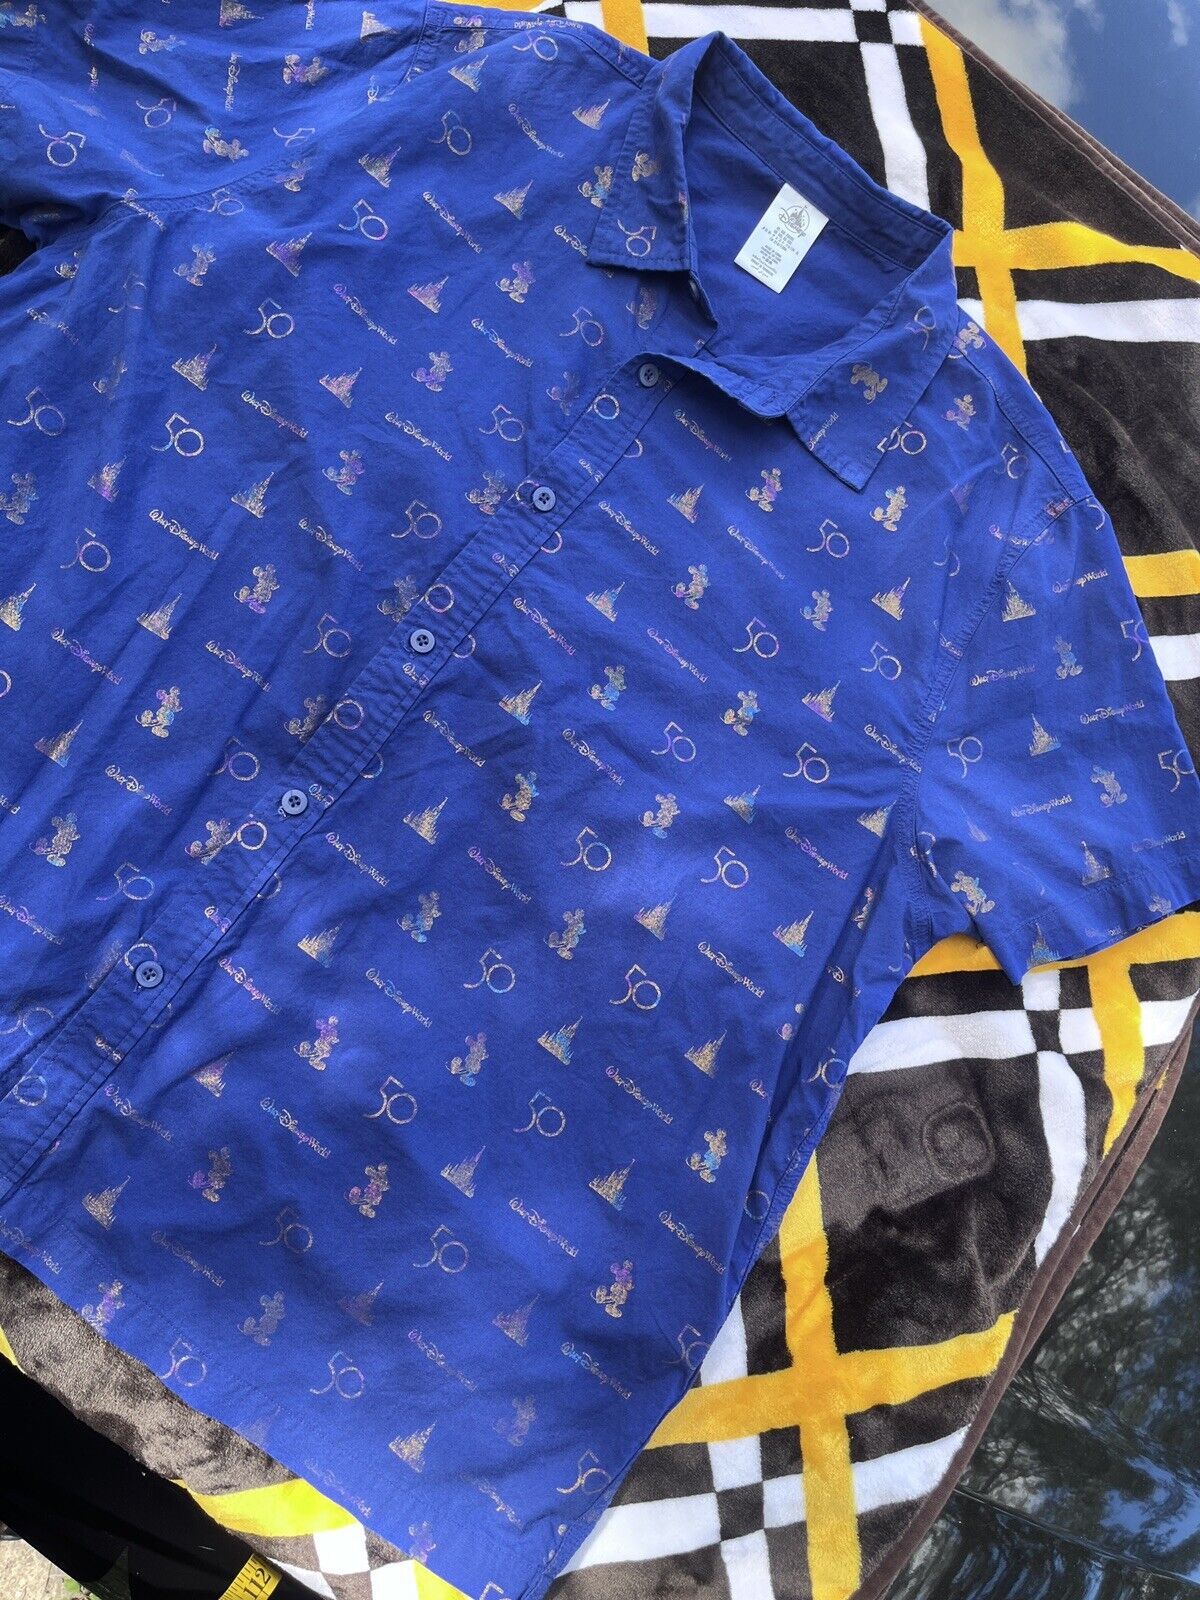 Walt Disney World 50th Anniversary EARidescent Blue Button Up Camp Shirt 2XL Men